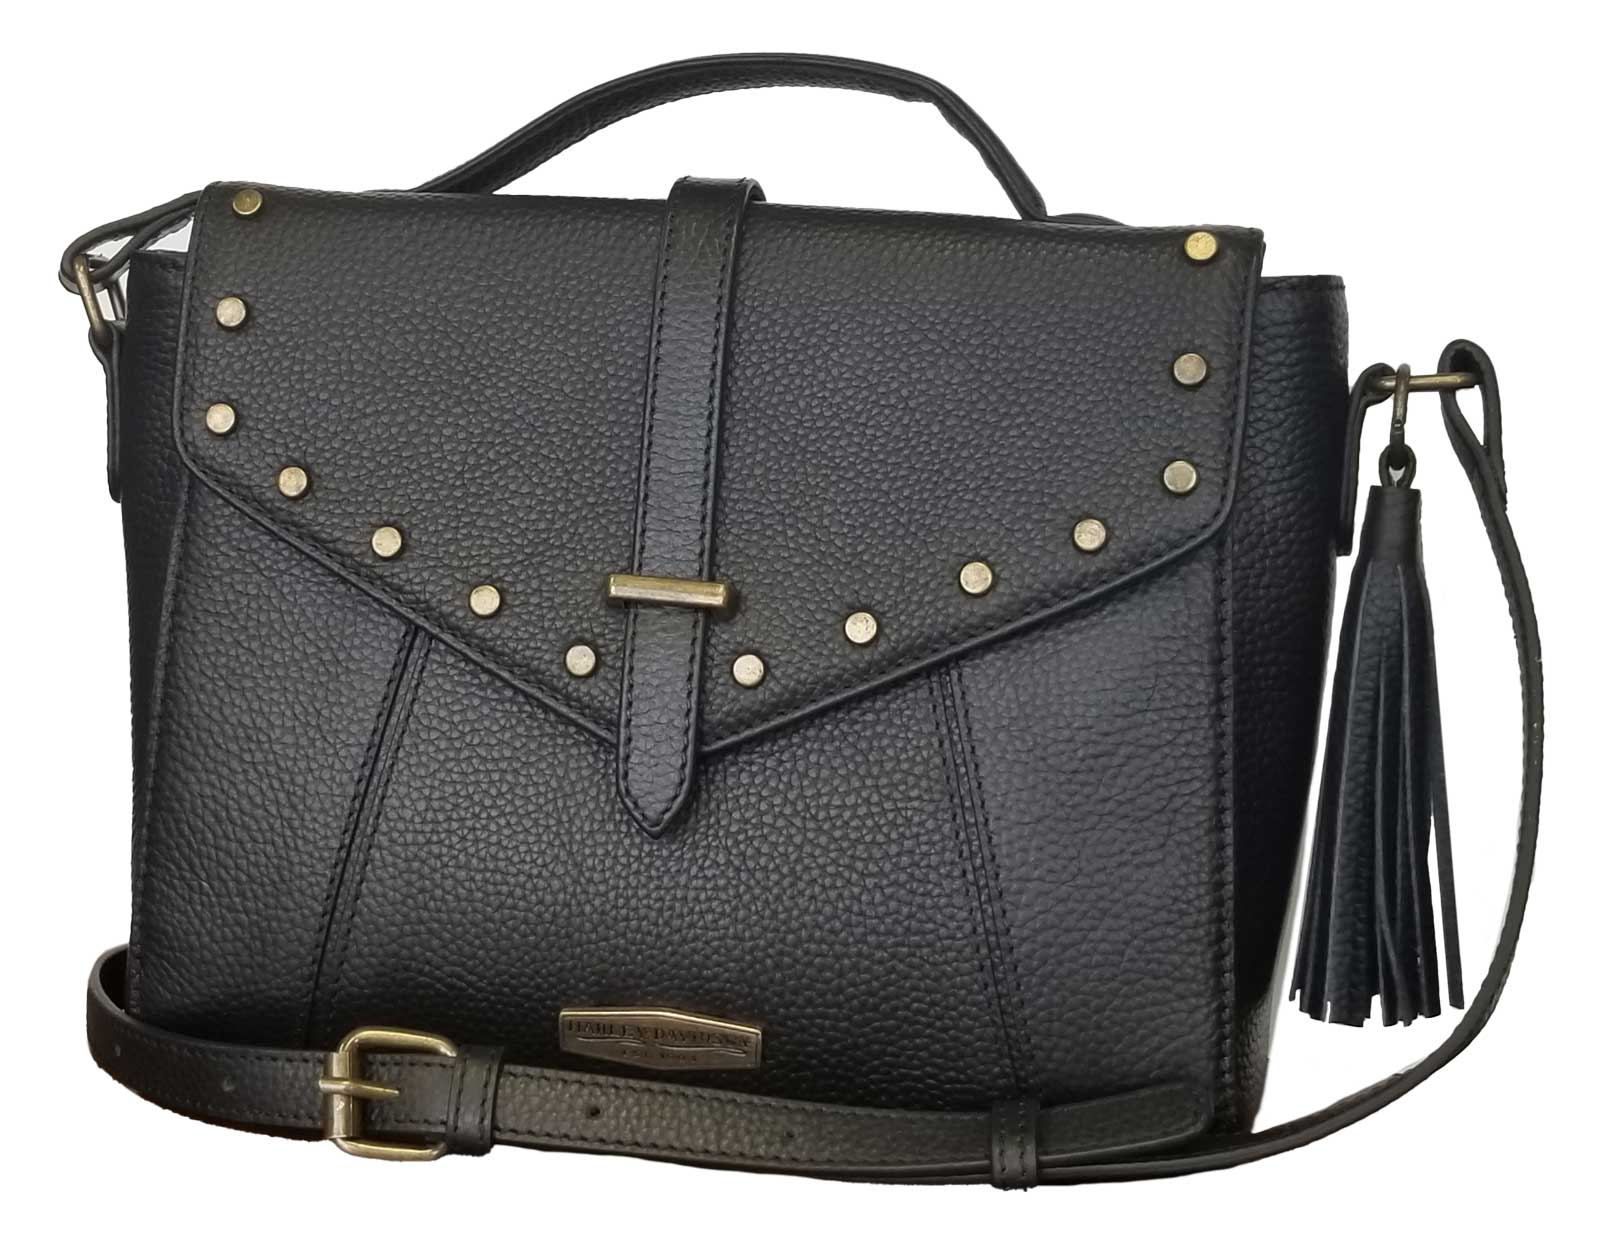 New Fashion Casual Mini Tote Luxury Chain Handbag Ladies Crossbody Female  Messenger Bag Women Shoulder Bags BLACK - Walmart.com